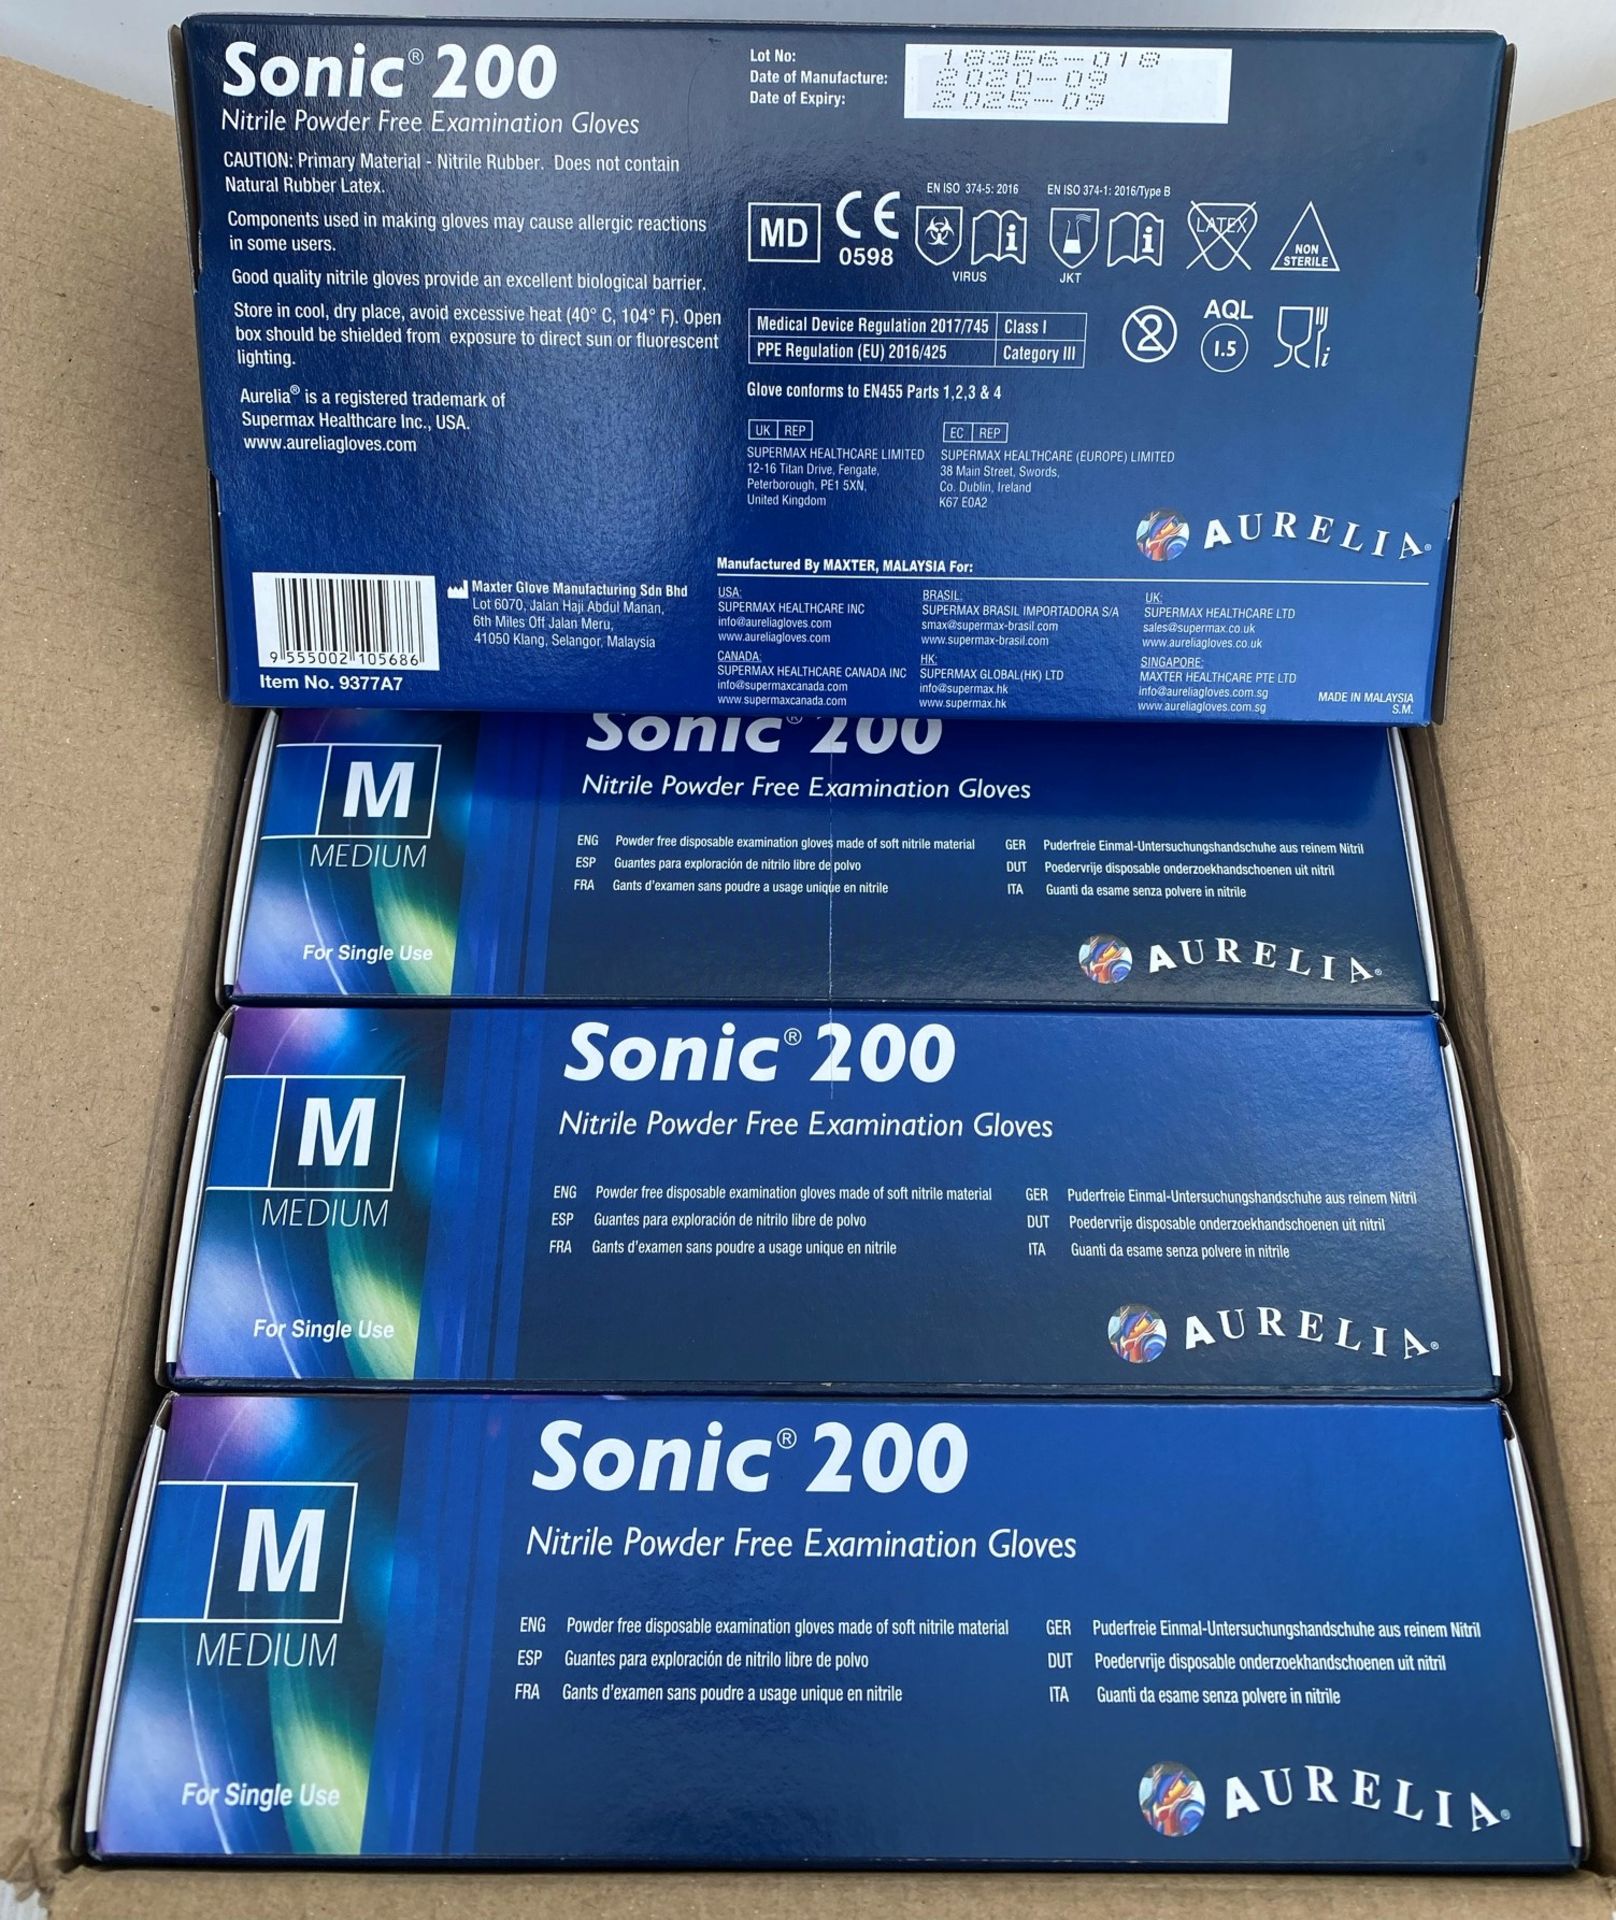 10 x boxes of 200 x Aurelia Sonic 200 Nitrile Powder Free Examination Gloves - Size Medium - Expiry - Image 2 of 2